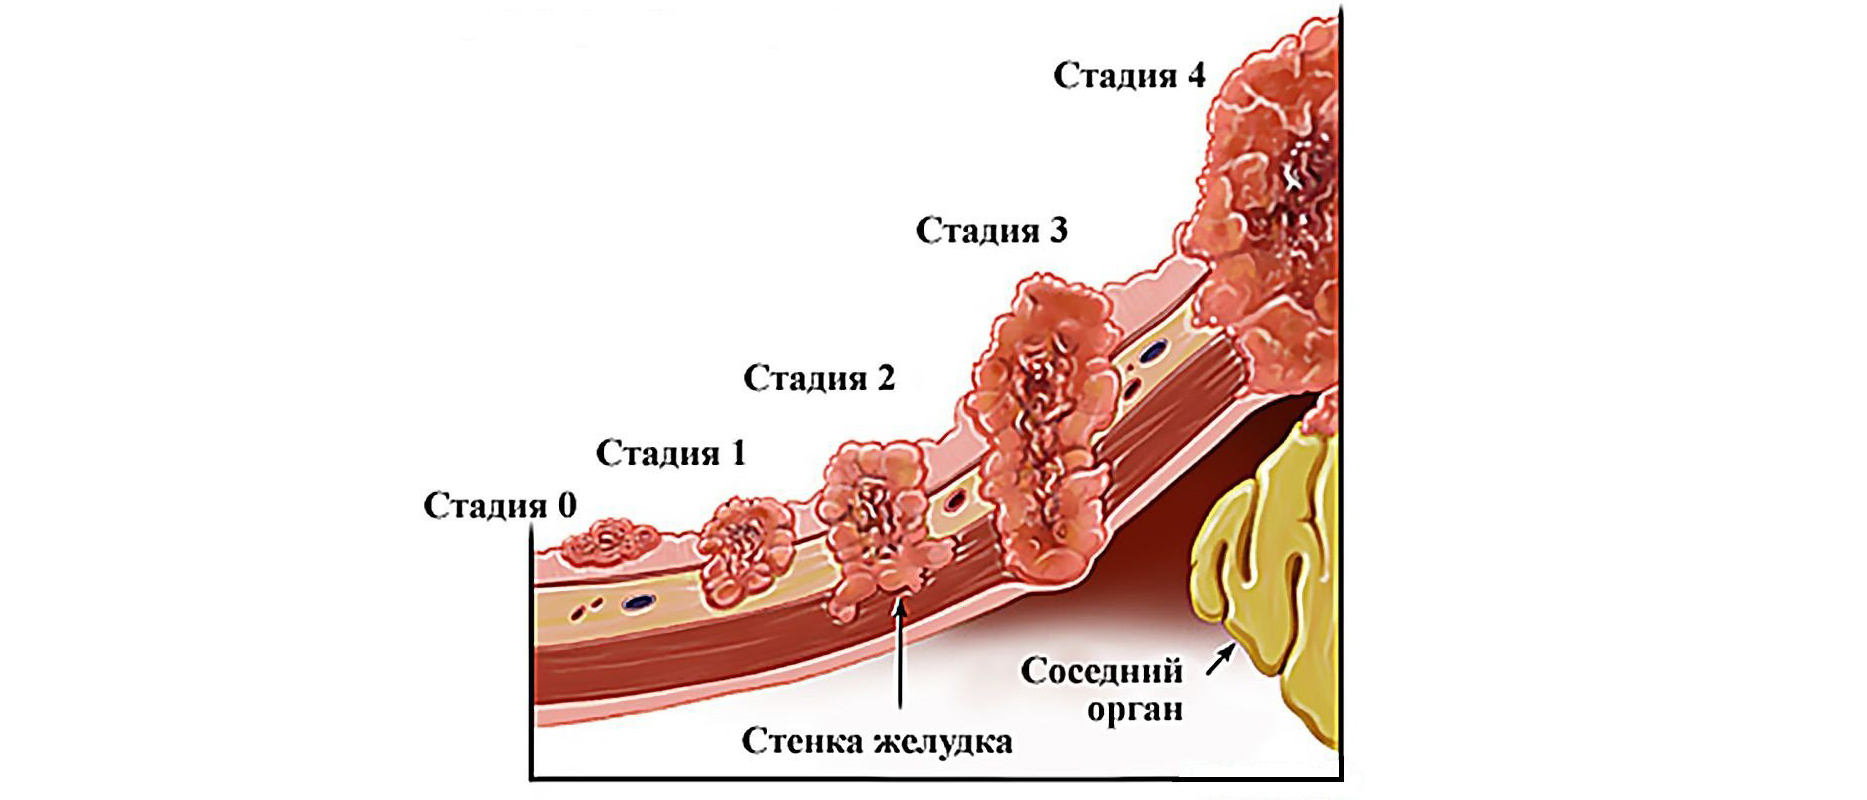 Можно вылечить 4 стадию рака. Стадии развития опухоли желудка. 3 Стадии развития опухоли. Степени онкологии желудка.